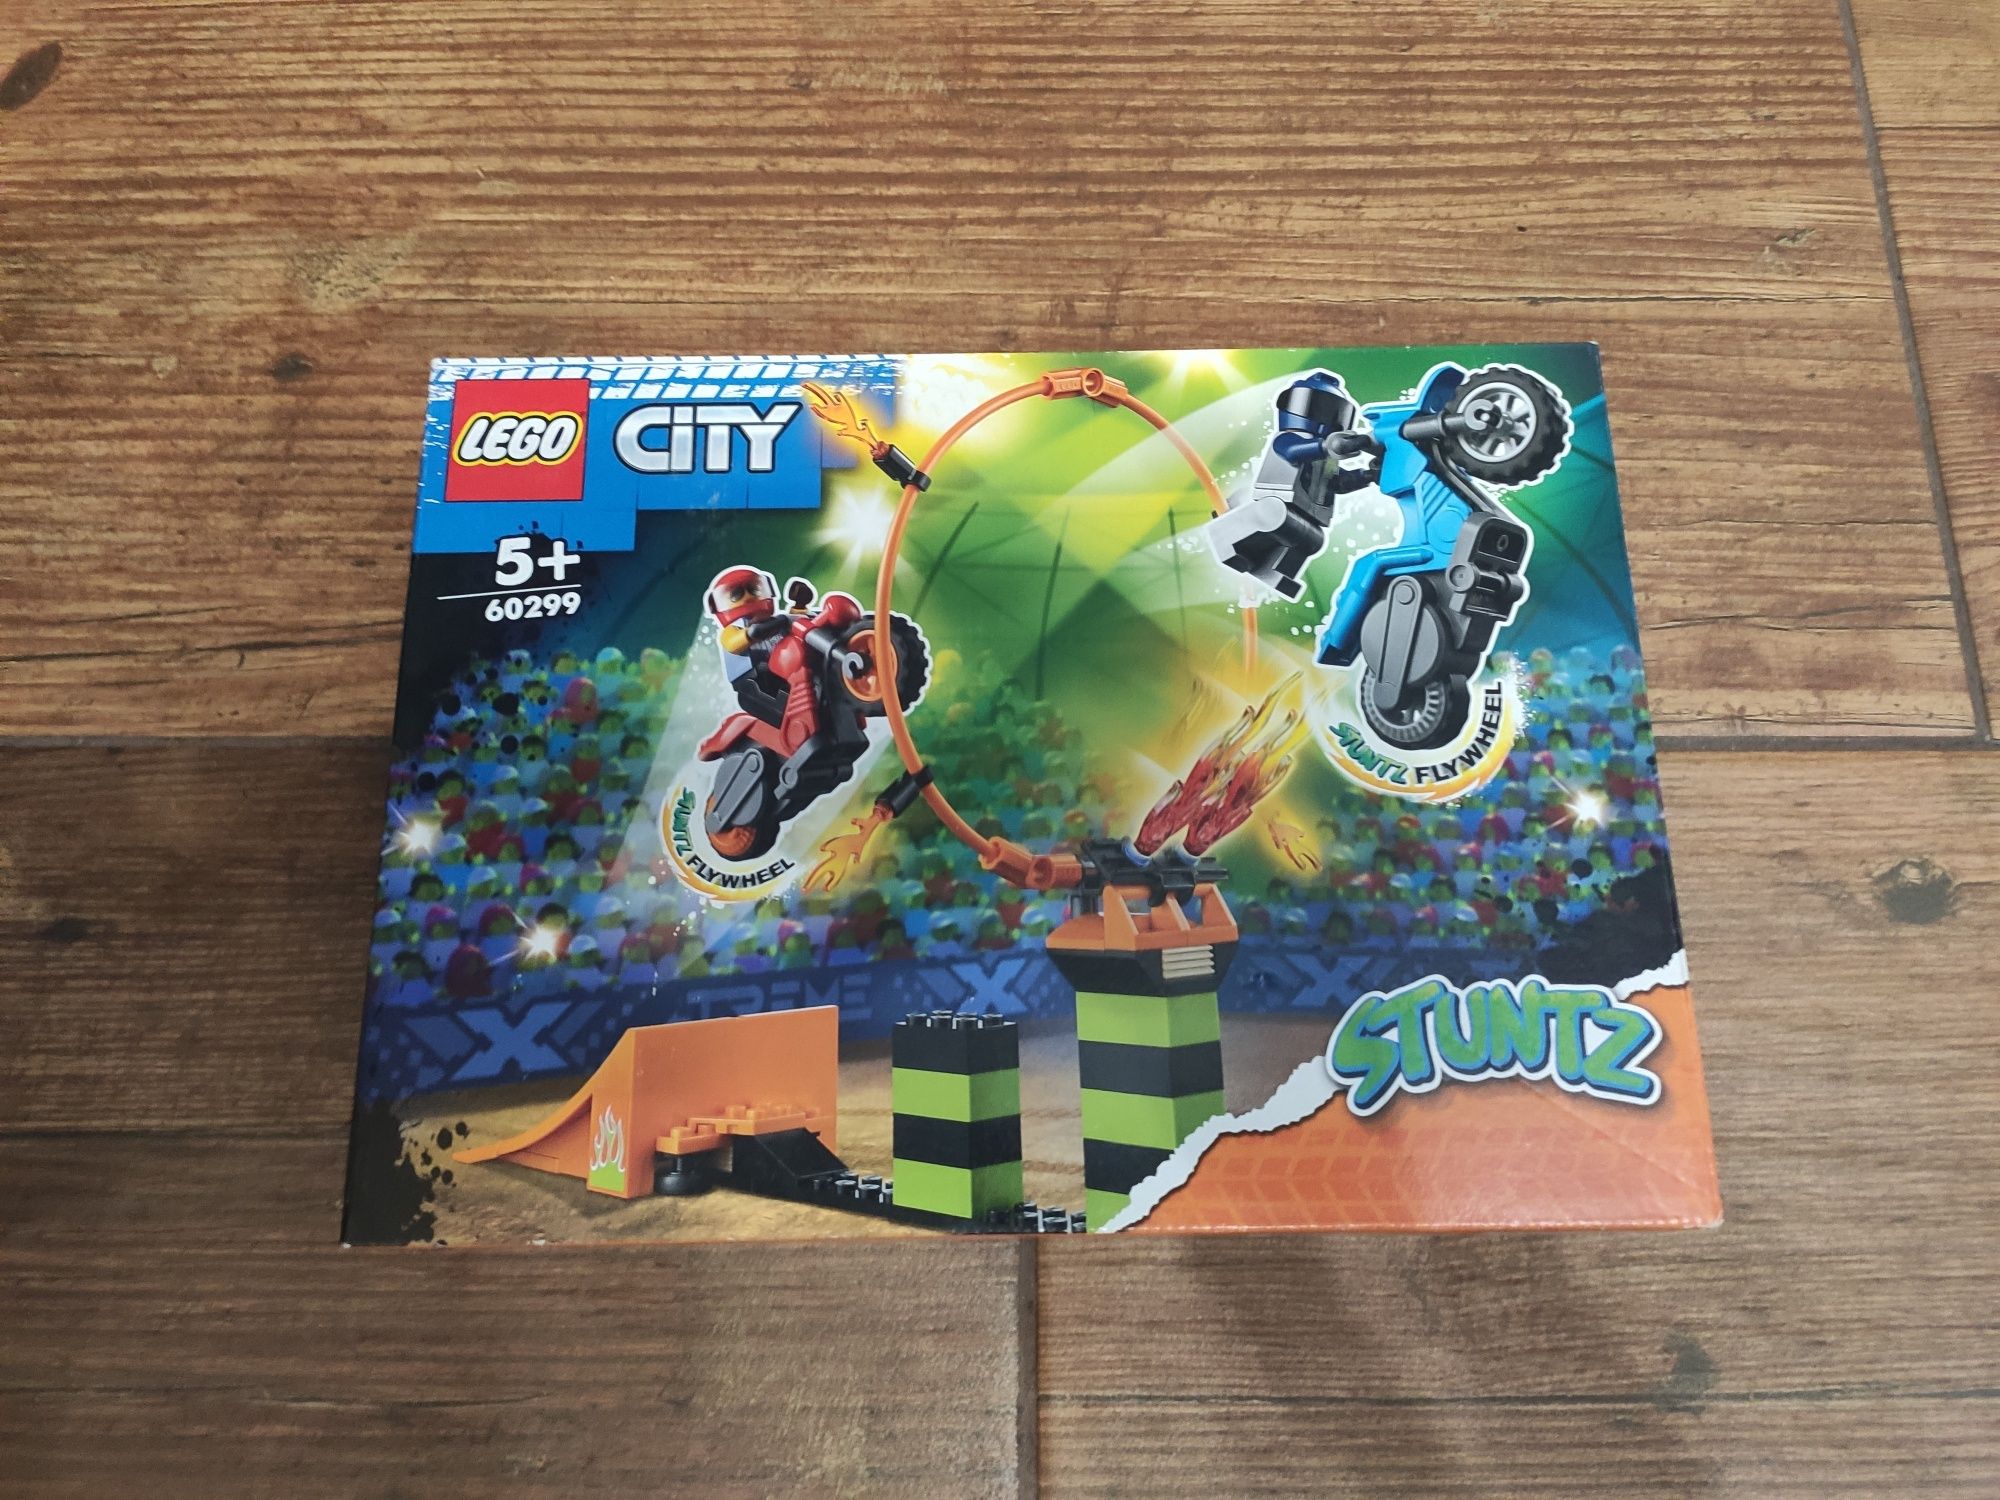 LEGO City 60299 NOWE nie rozpakowane